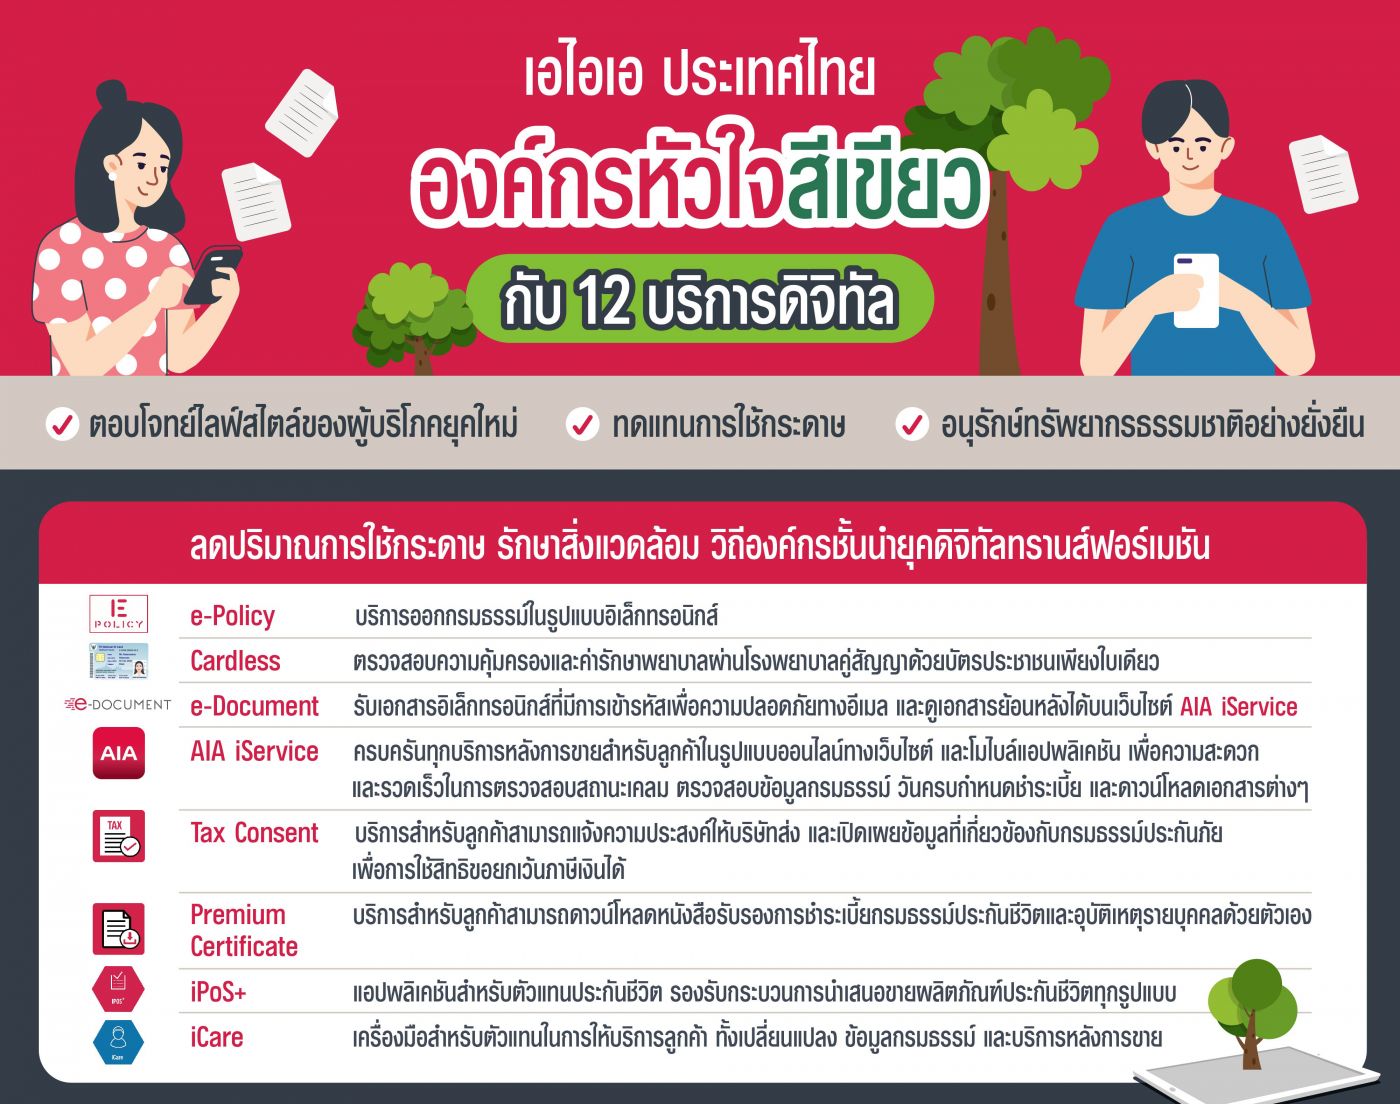 เอไอเอ ประเทศไทย ชู 12 บริการดิจิทัลครบครัน ยืนหนึ่งองค์กรชั้นนำหัวใจสีเขียวในวันคุ้มครองโลก